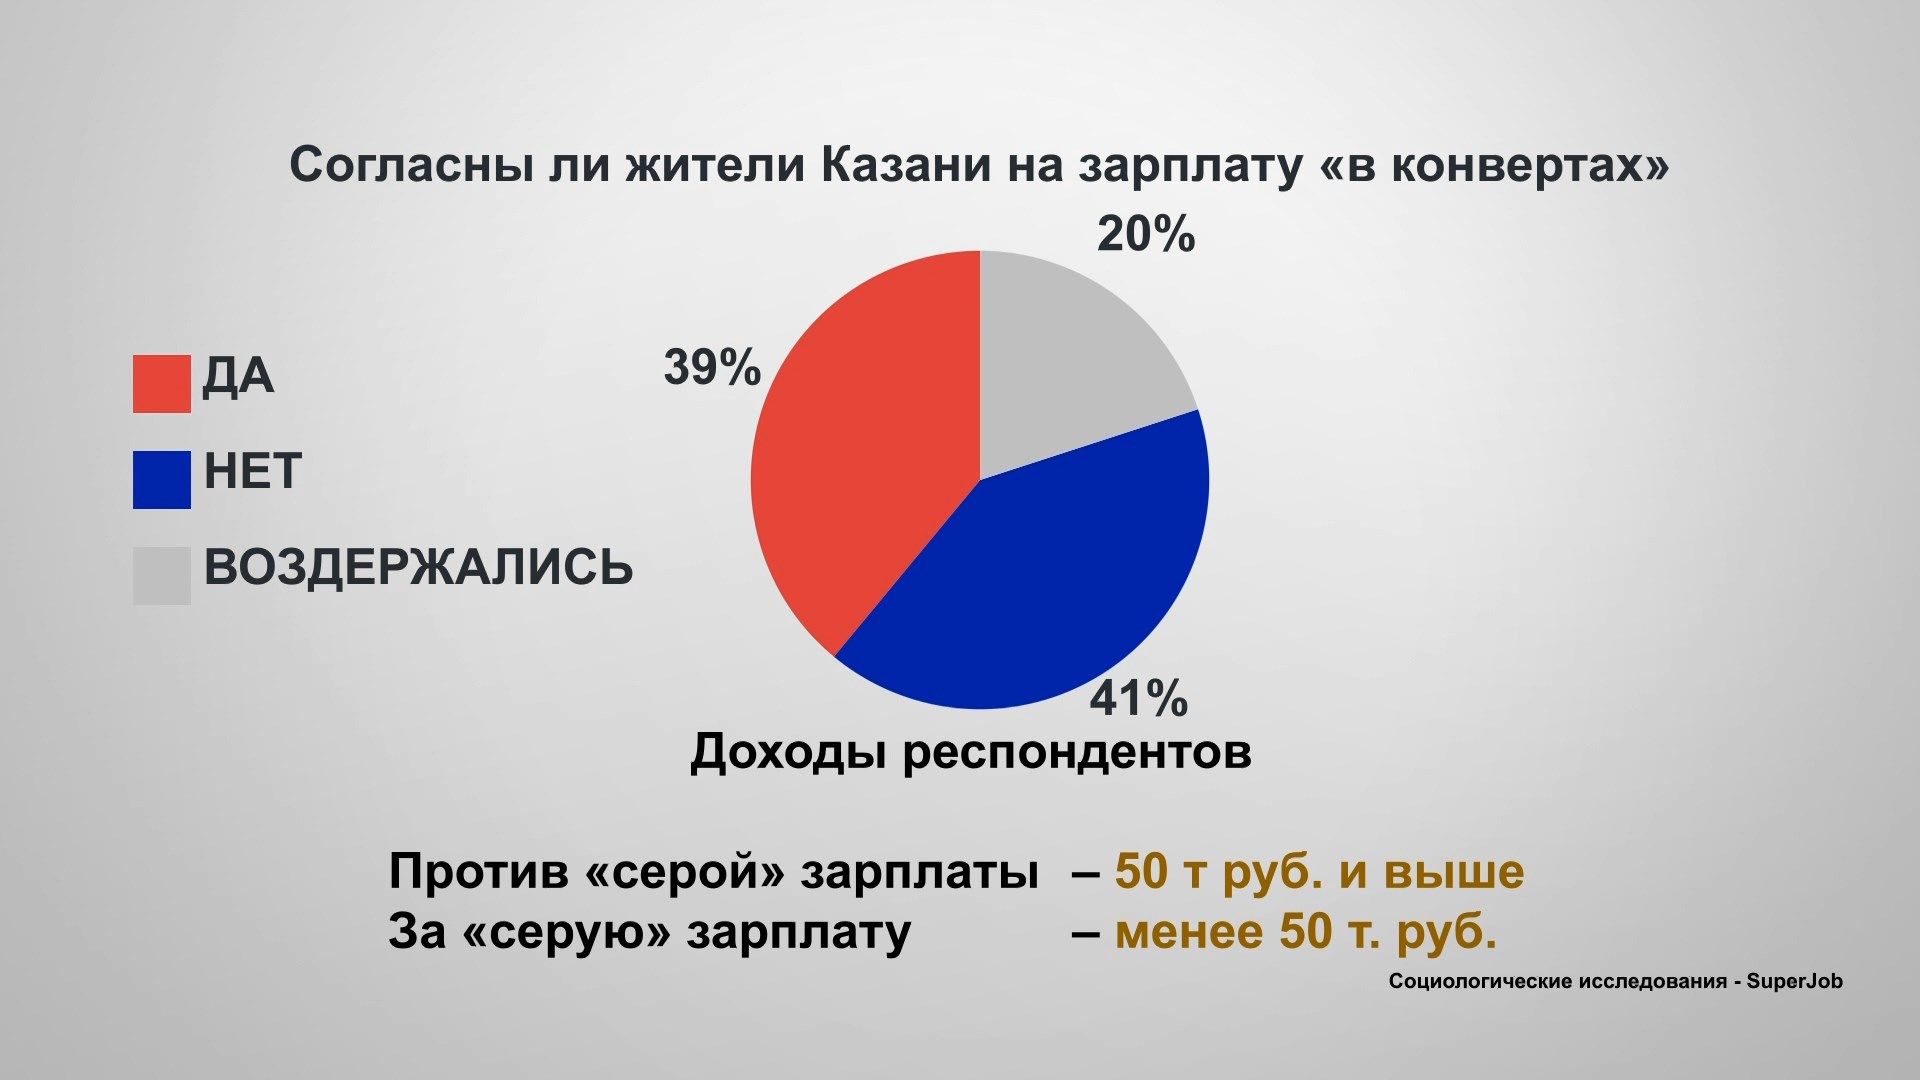 Исследование: 39% казанцев согласны на серую зарплату